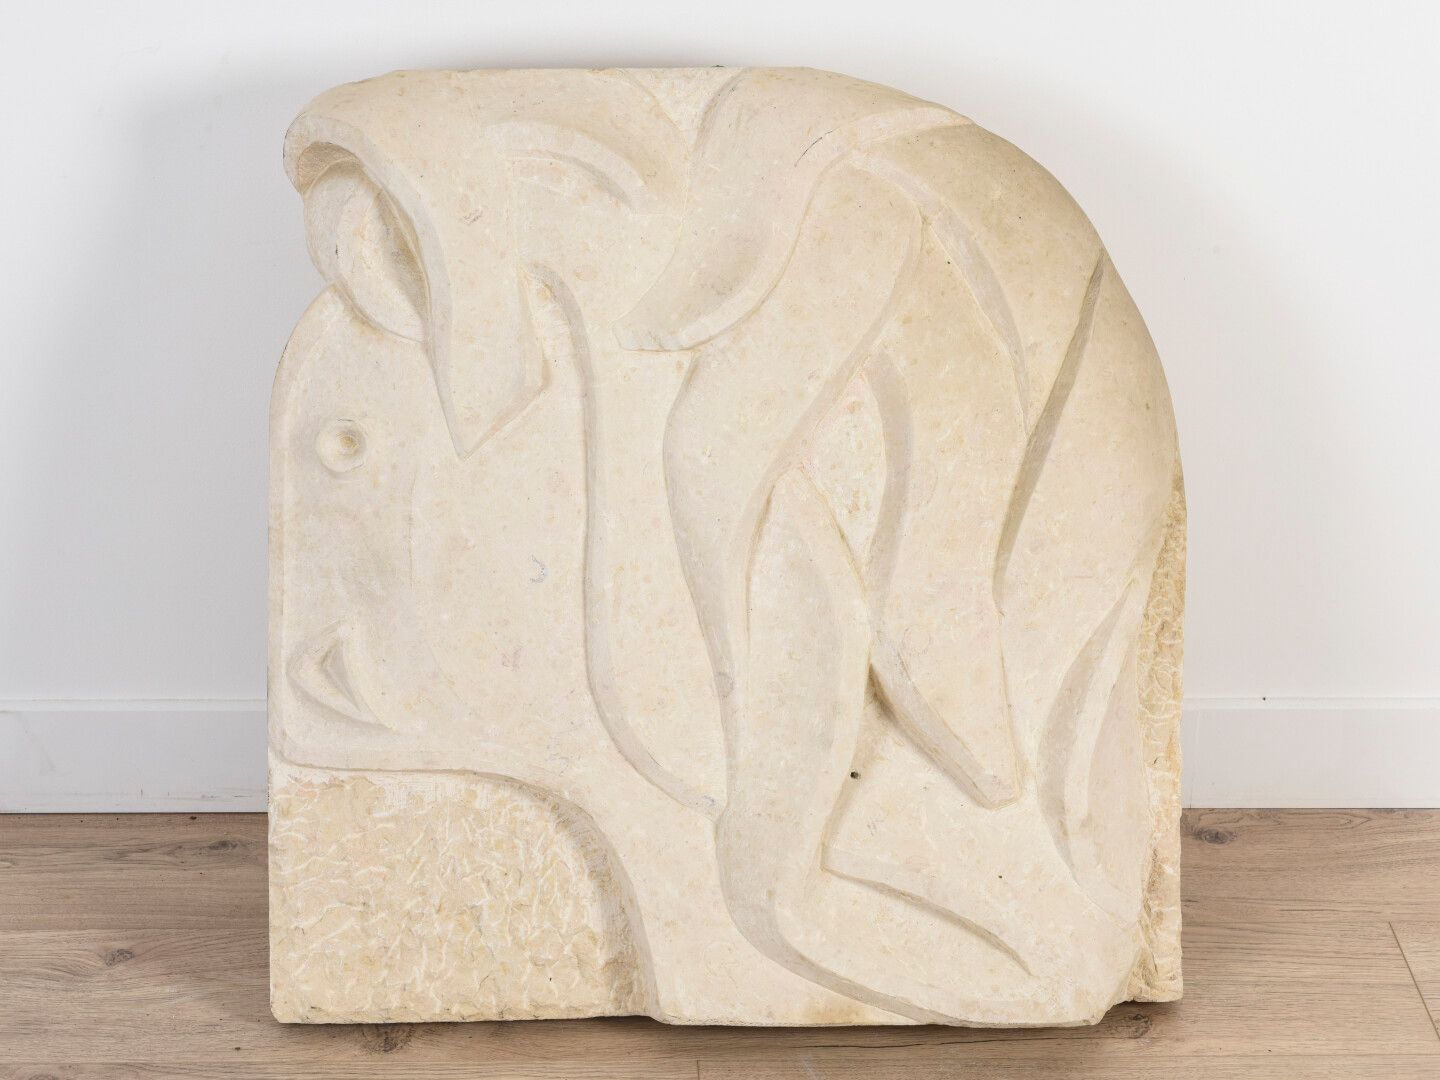 Null Vincent GONZALEZ (1928-2019)

Soggetto in pietra calcarea

72 x 67 cm